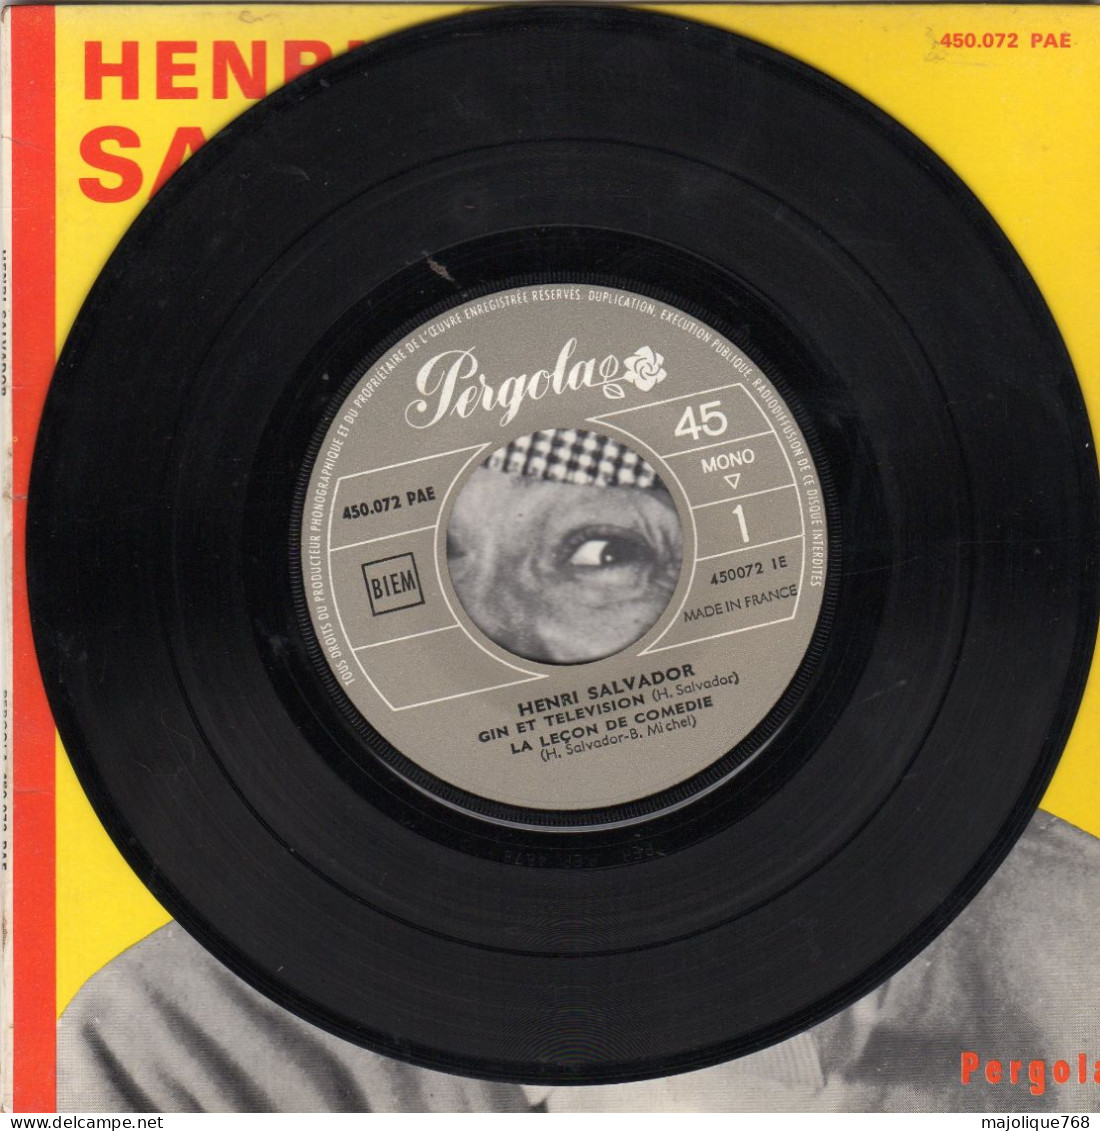 Disque 45T - SP De Henri Salvador - Gin Et Télévision - Pergola 450.072 PAE - France 1964 - Comiques, Cabaret